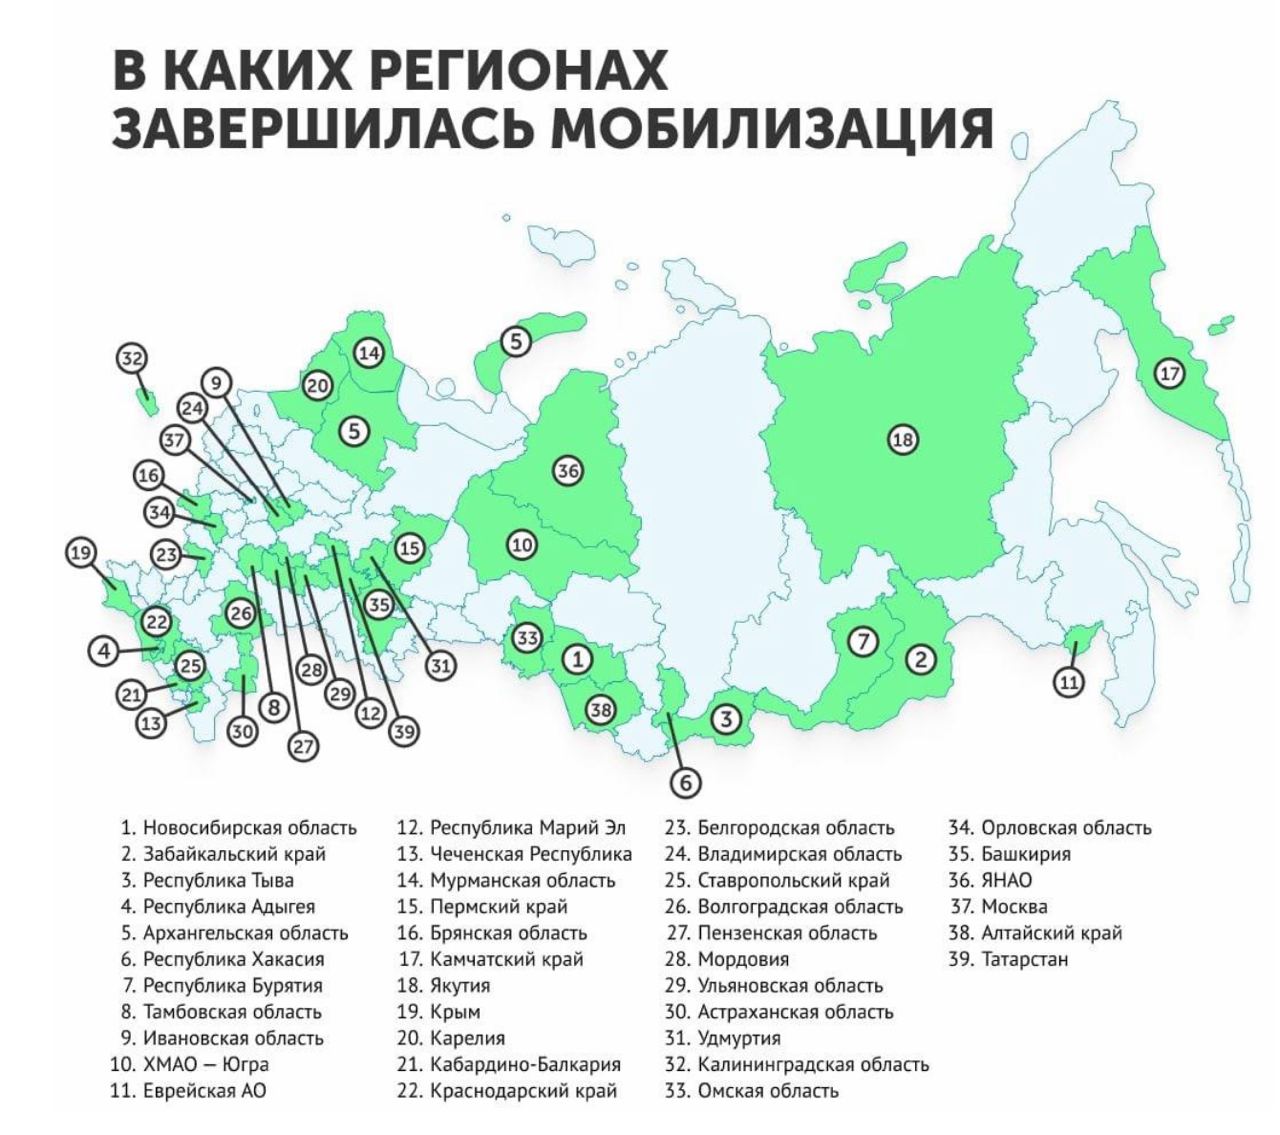 Будет ли мобилизация весной после выборов. Мобилизация по регионам России. Карта России с регионами. Количество мобилизированных по регионам. Регионы по мобилизации в РФ 2022.